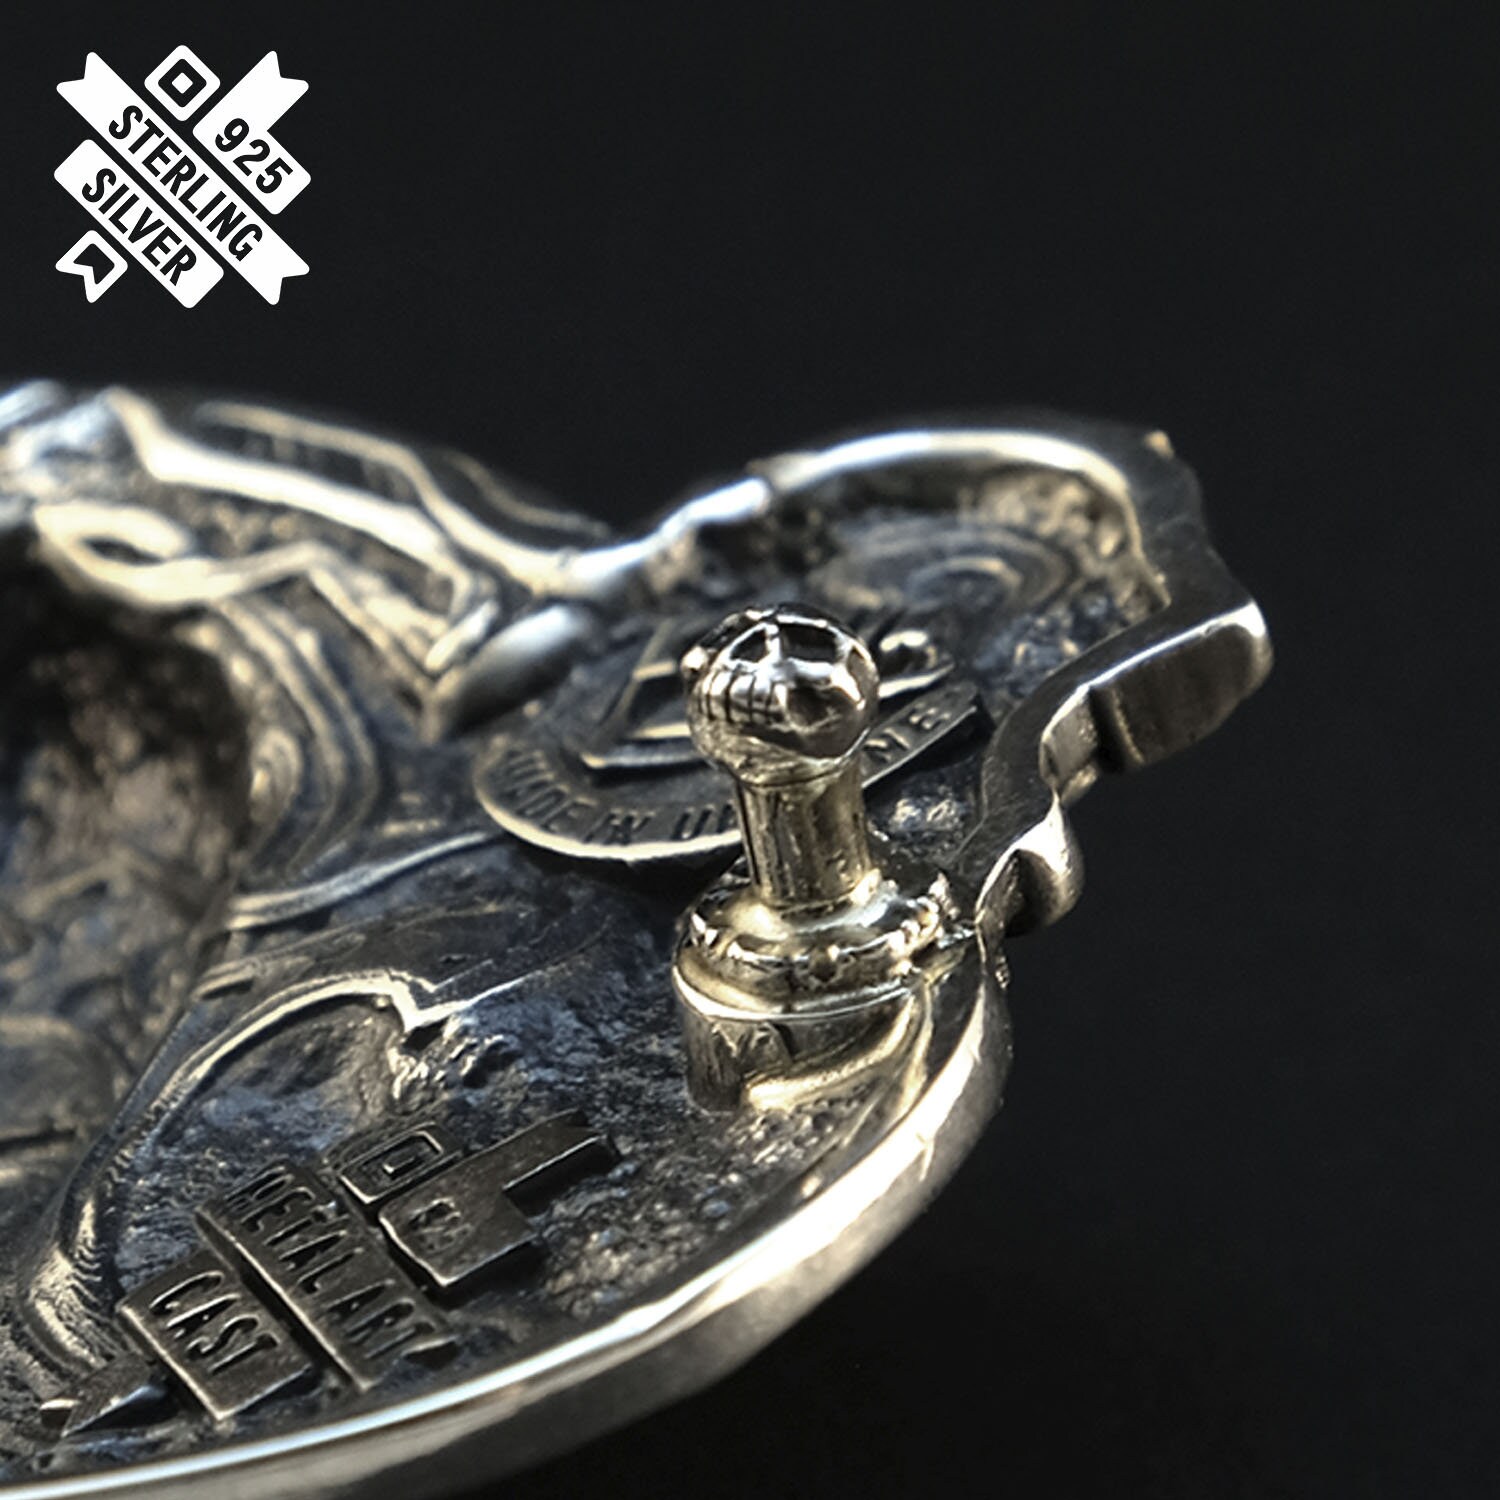 Accesorios Cinturones y tirantes Hebillas para cinturón Tiwaz 925 Hebilla de cinturón de plata de ley nórdico antiguo nórdico nórdico nórdico vikingo pagano TYR hebilla rúnica de plata maciza 